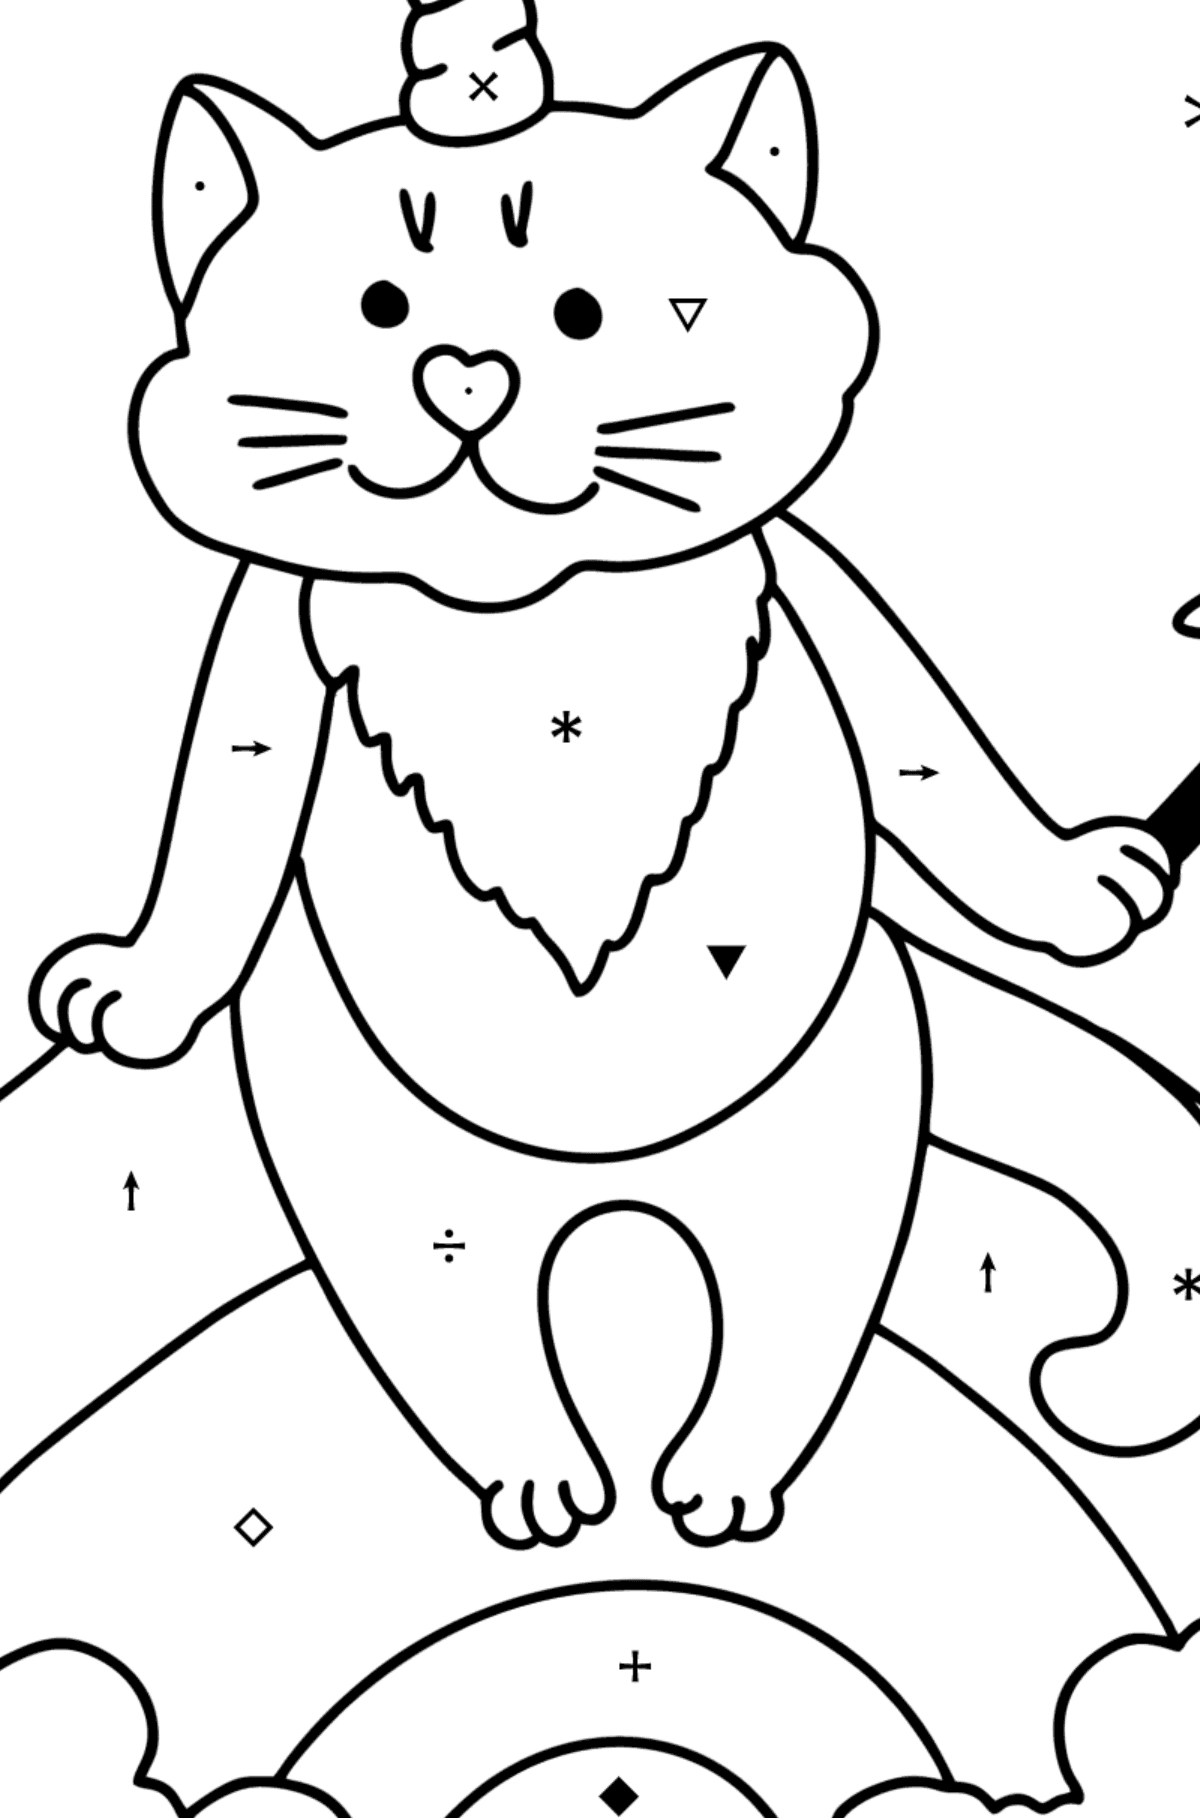 Disegno di Gattino unicorno da colorare - Colorare per simboli per bambini